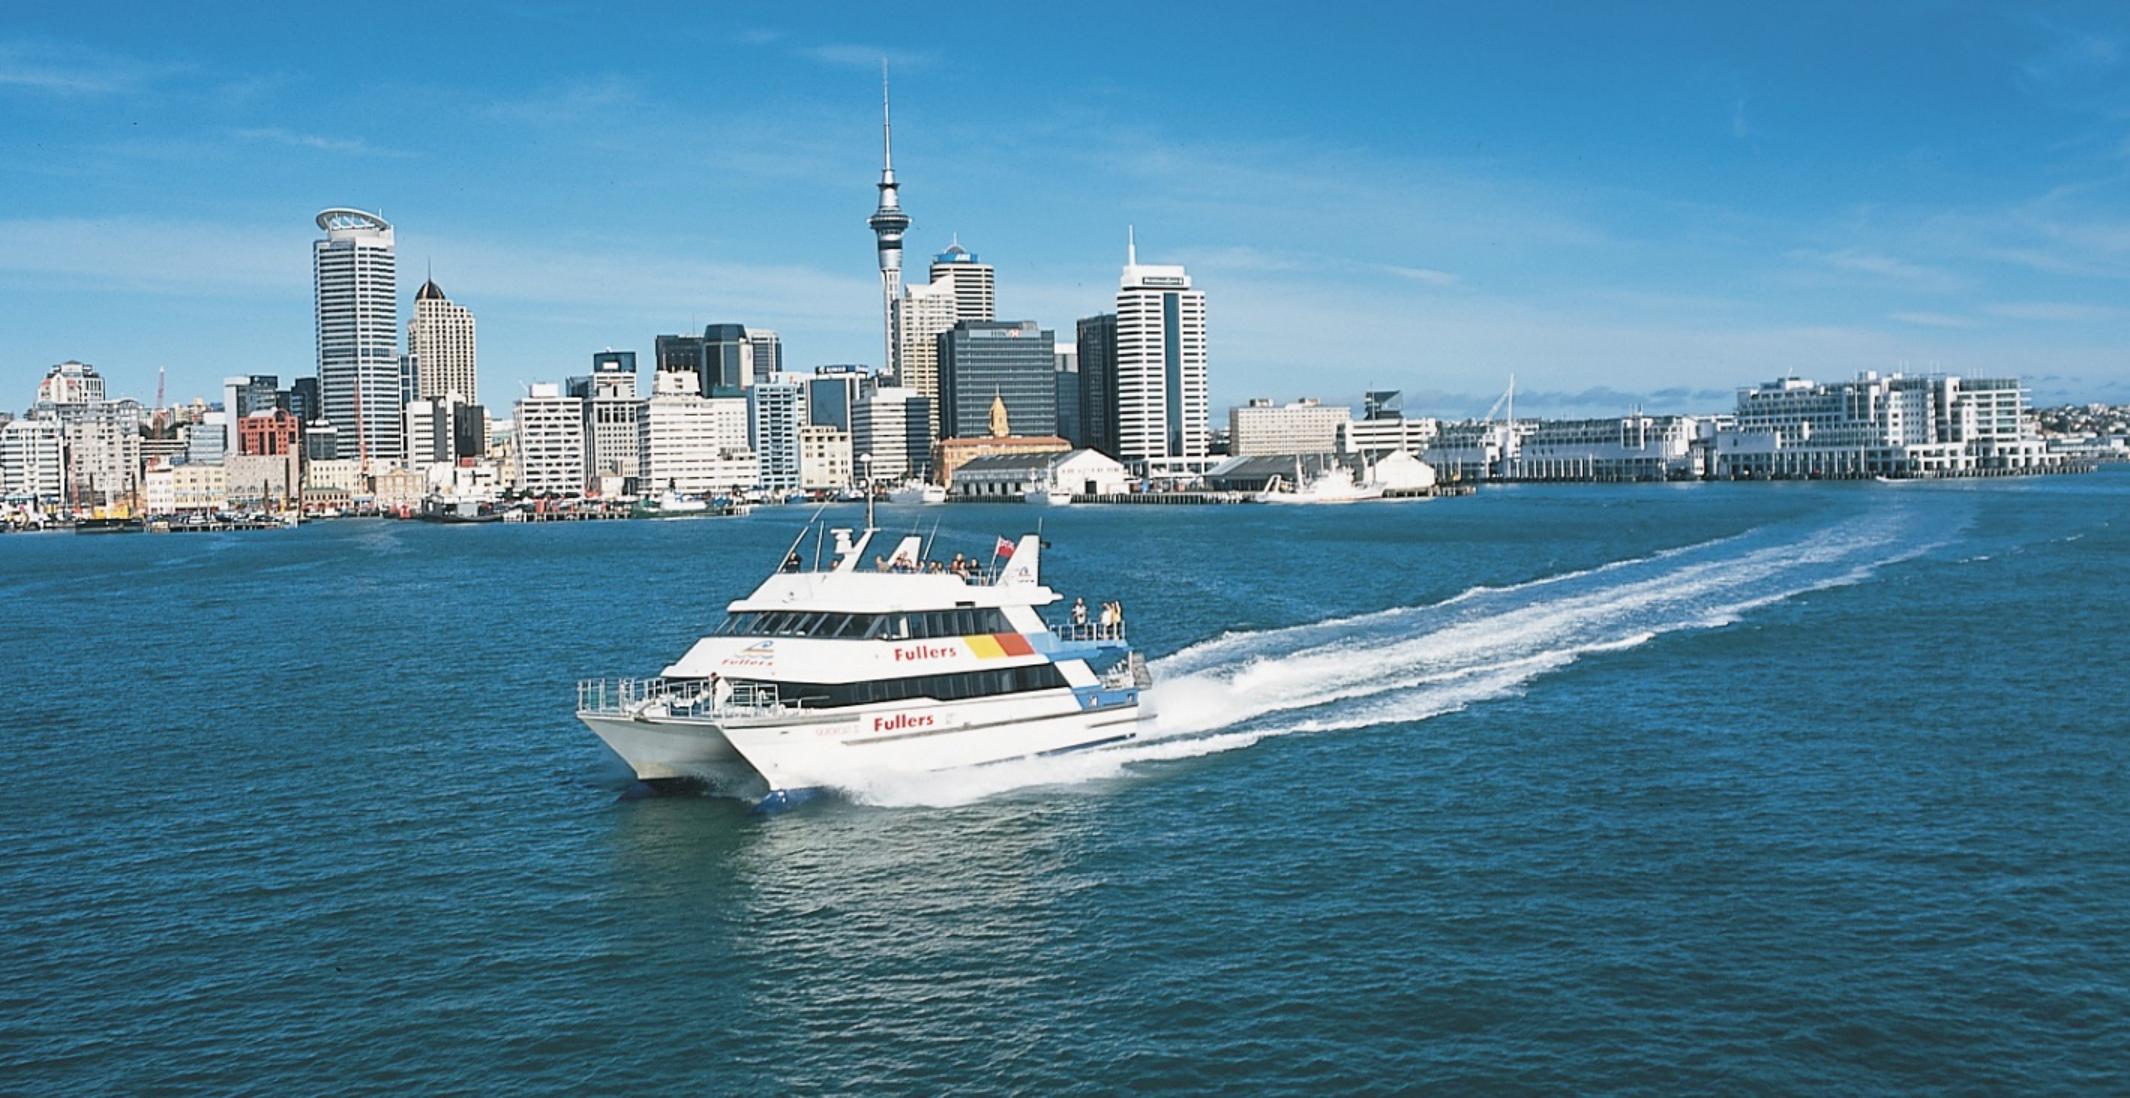 Visiter Auckland en 1 jour : visite guidée, croisière dans la baie et accès au sommet de la Sky Tower